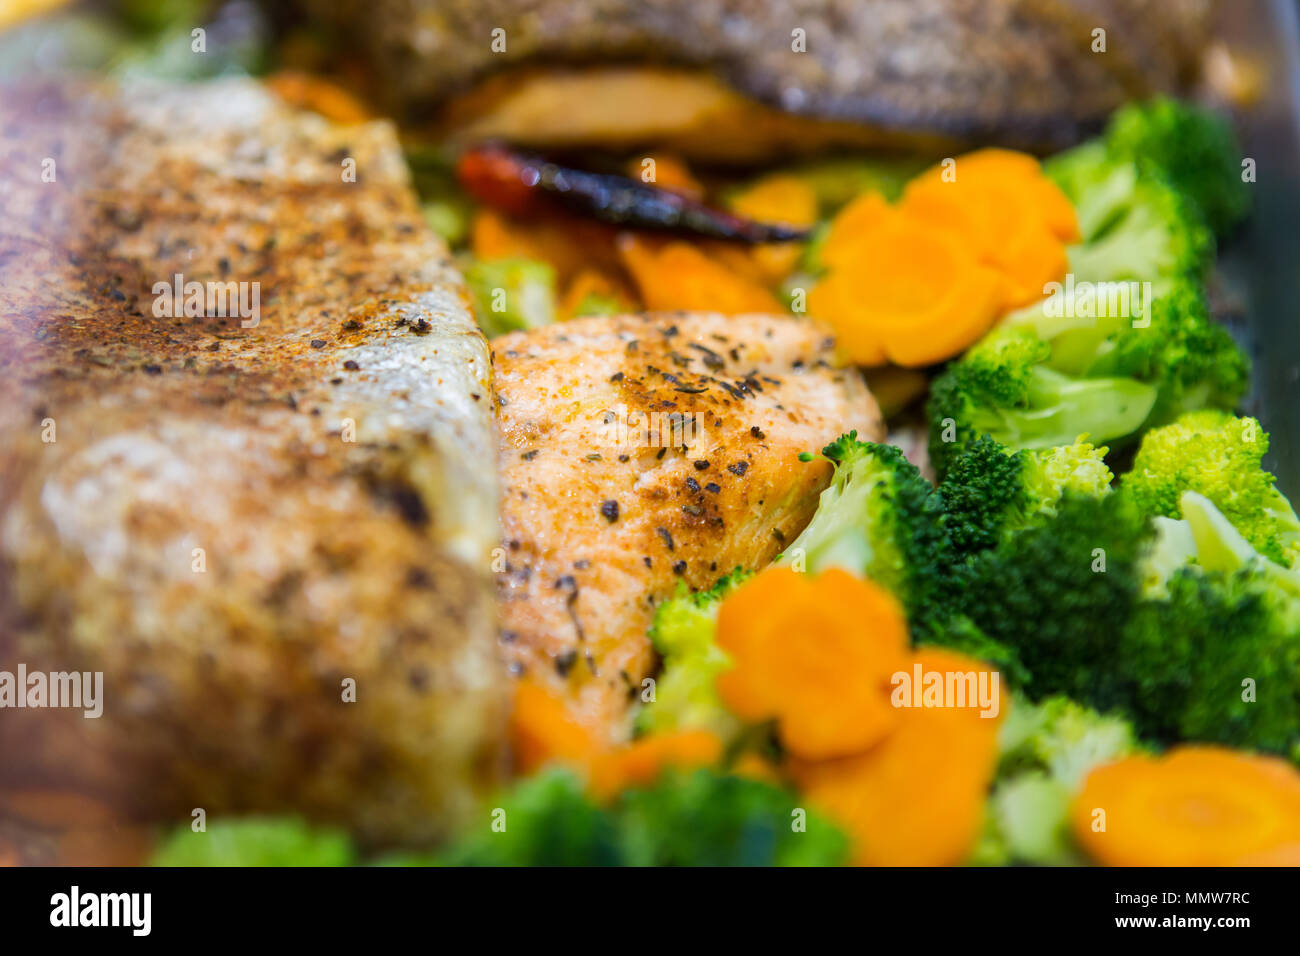 Nahaufnahme einer köstlichen Mahlzeit besteht aus Brokkoli, Karotten und Lachsfisch. Stockfoto